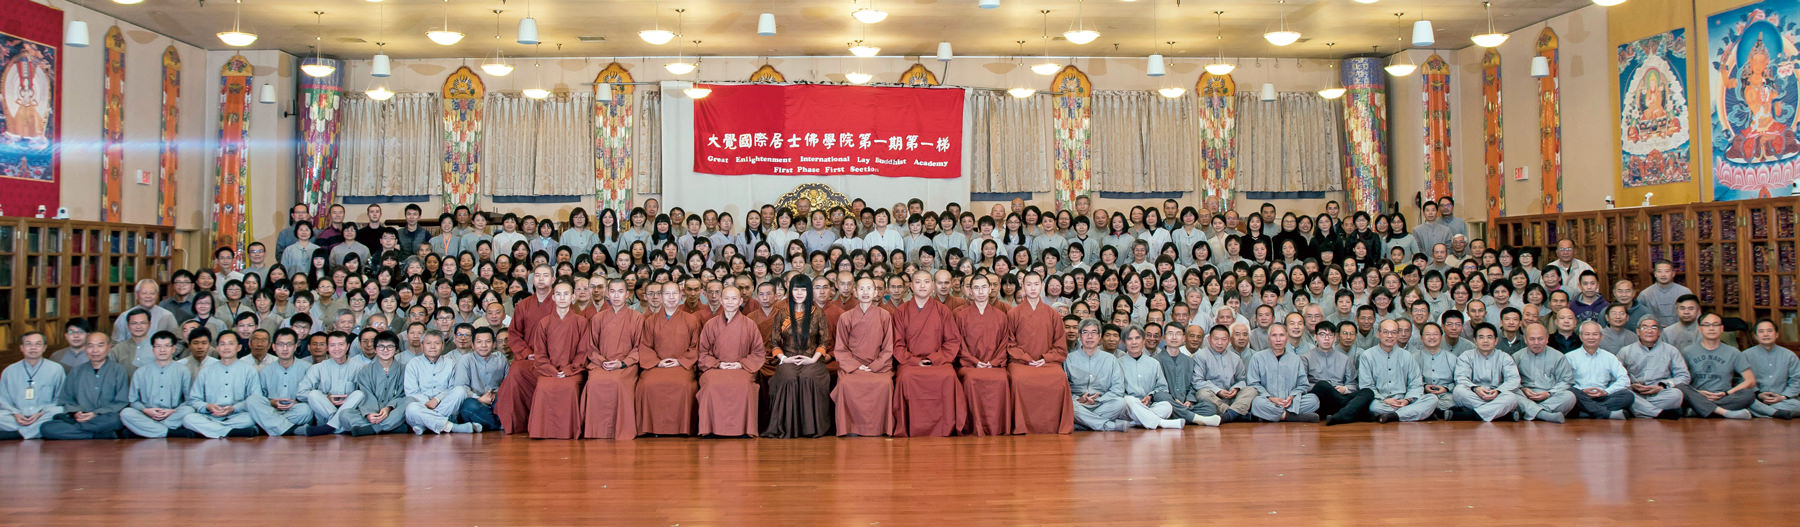 福智真如上師與比丘僧團和大覺國際居士佛學院第一期第一梯學員於結業式合照